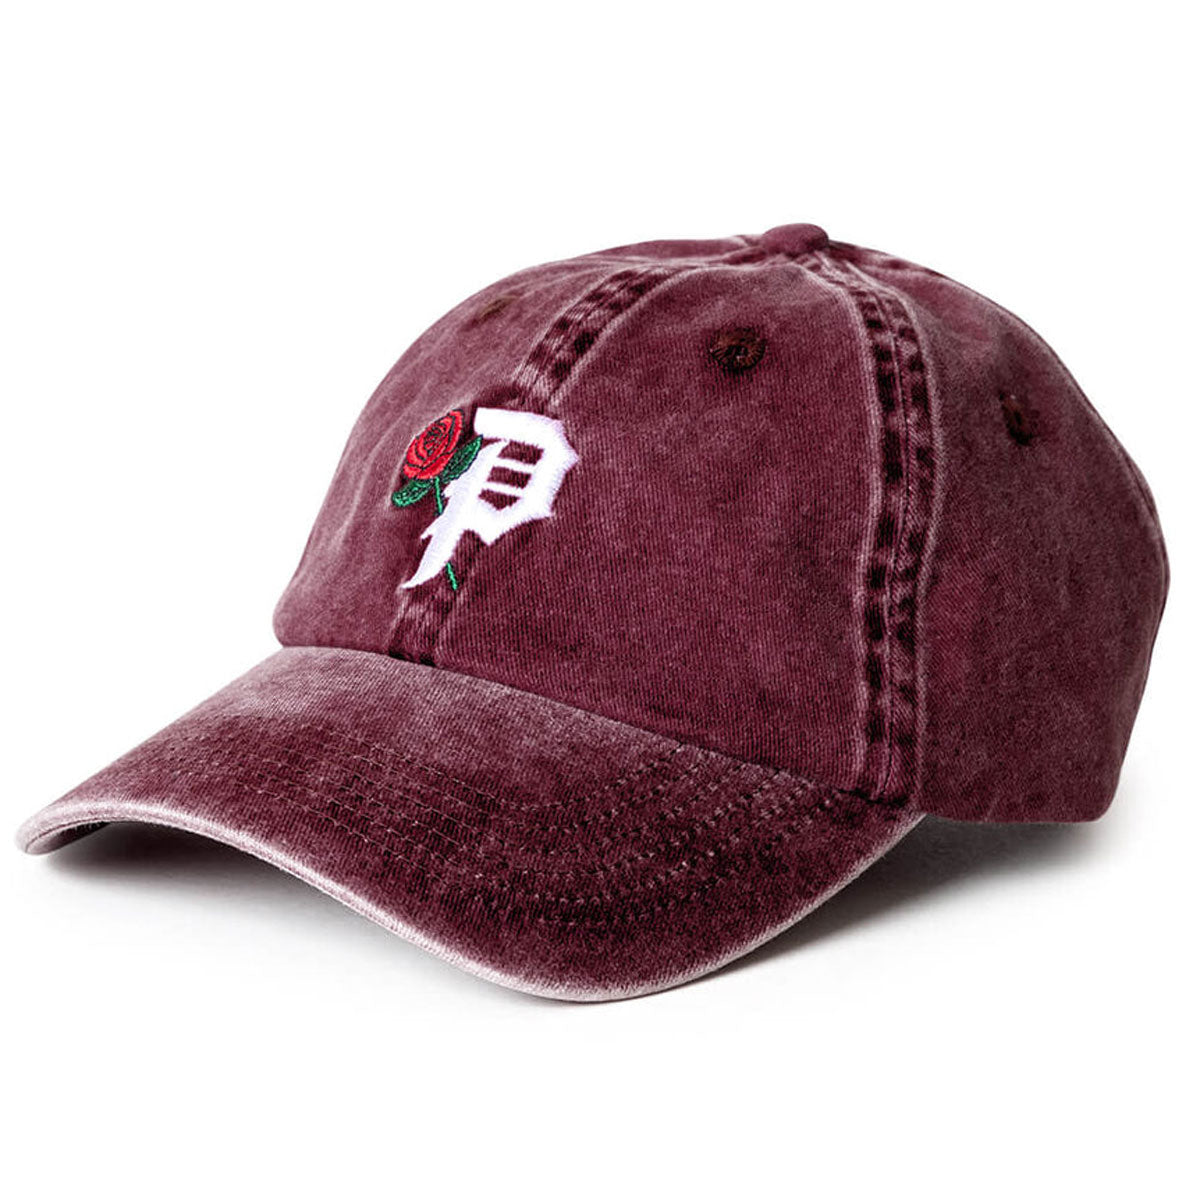 Primitive Rosey Over-dyed Strapback Hat - Burgundy image 1